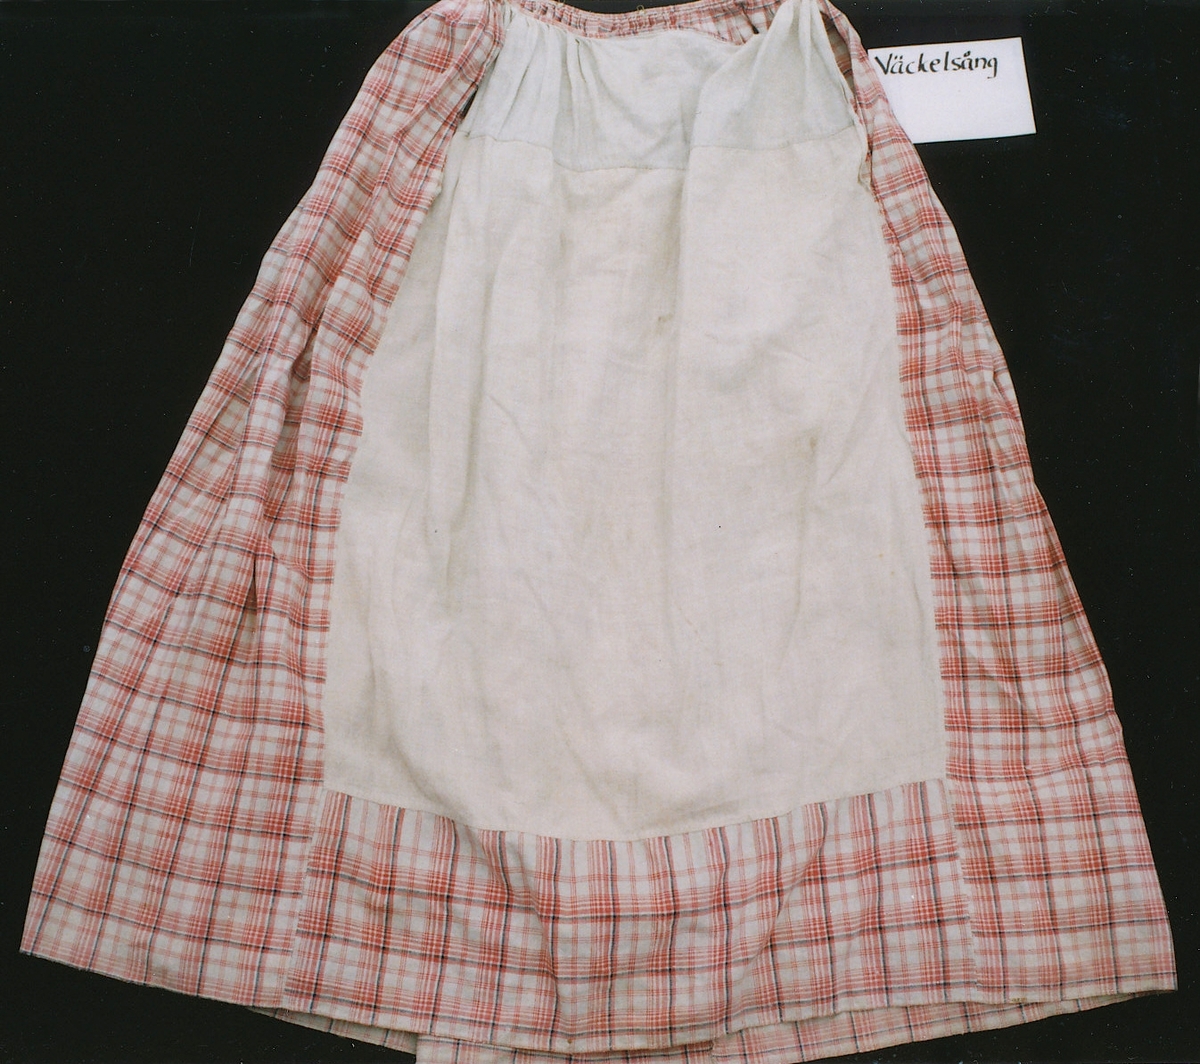 Tvådelad klänning med tröja och kjol i samma tyg storrutig bomullslärft i rött och blått på vit botten. 
Liv: Kort modell med uppvikt nederkant. Två framstycken/sidostycken dubbelknäppning med 3 par klädda knappar, tränsade knapphål på vänster sida, två små utåtlagda slag vid halsringningen. Ett bakstycke avsmalnande neråt med två skörtflikar, den högra iskarvad. Nederkanten infodrad med tyget och uppvikt tillsammans med de två skörtflikarna.
Lång ensömsärm, vid upptill med små veck på ärmkullen, avsmalnande mot handleden. 
Foder i bakstycke och höger framstycke av smårutig linnelärft i blått, brunt och gult på vit botten, i vänster framstycke och i ärmarna av blekt linnelärft. Bak i fodret 2 hakar att fästa mot kjolen.

Kjol i tre våder plus en iskarvad sparvåd av blekt linnelärft framtill som doldes under förklädet. Sparvåden är slät mitt fram, mot sidorna små lagda veck, 24 cm långa sprund/öppning vid var sida.  Våderna är tätt veckade mot smal midjelinning av tyget som knäpps i vänster sida med hyska och hake, baktill på linningen 2 hyskor att fästa mot tröjan. 
Smal fåll utan skoning i nedertkanten.

/Birgitta Blixt 2017